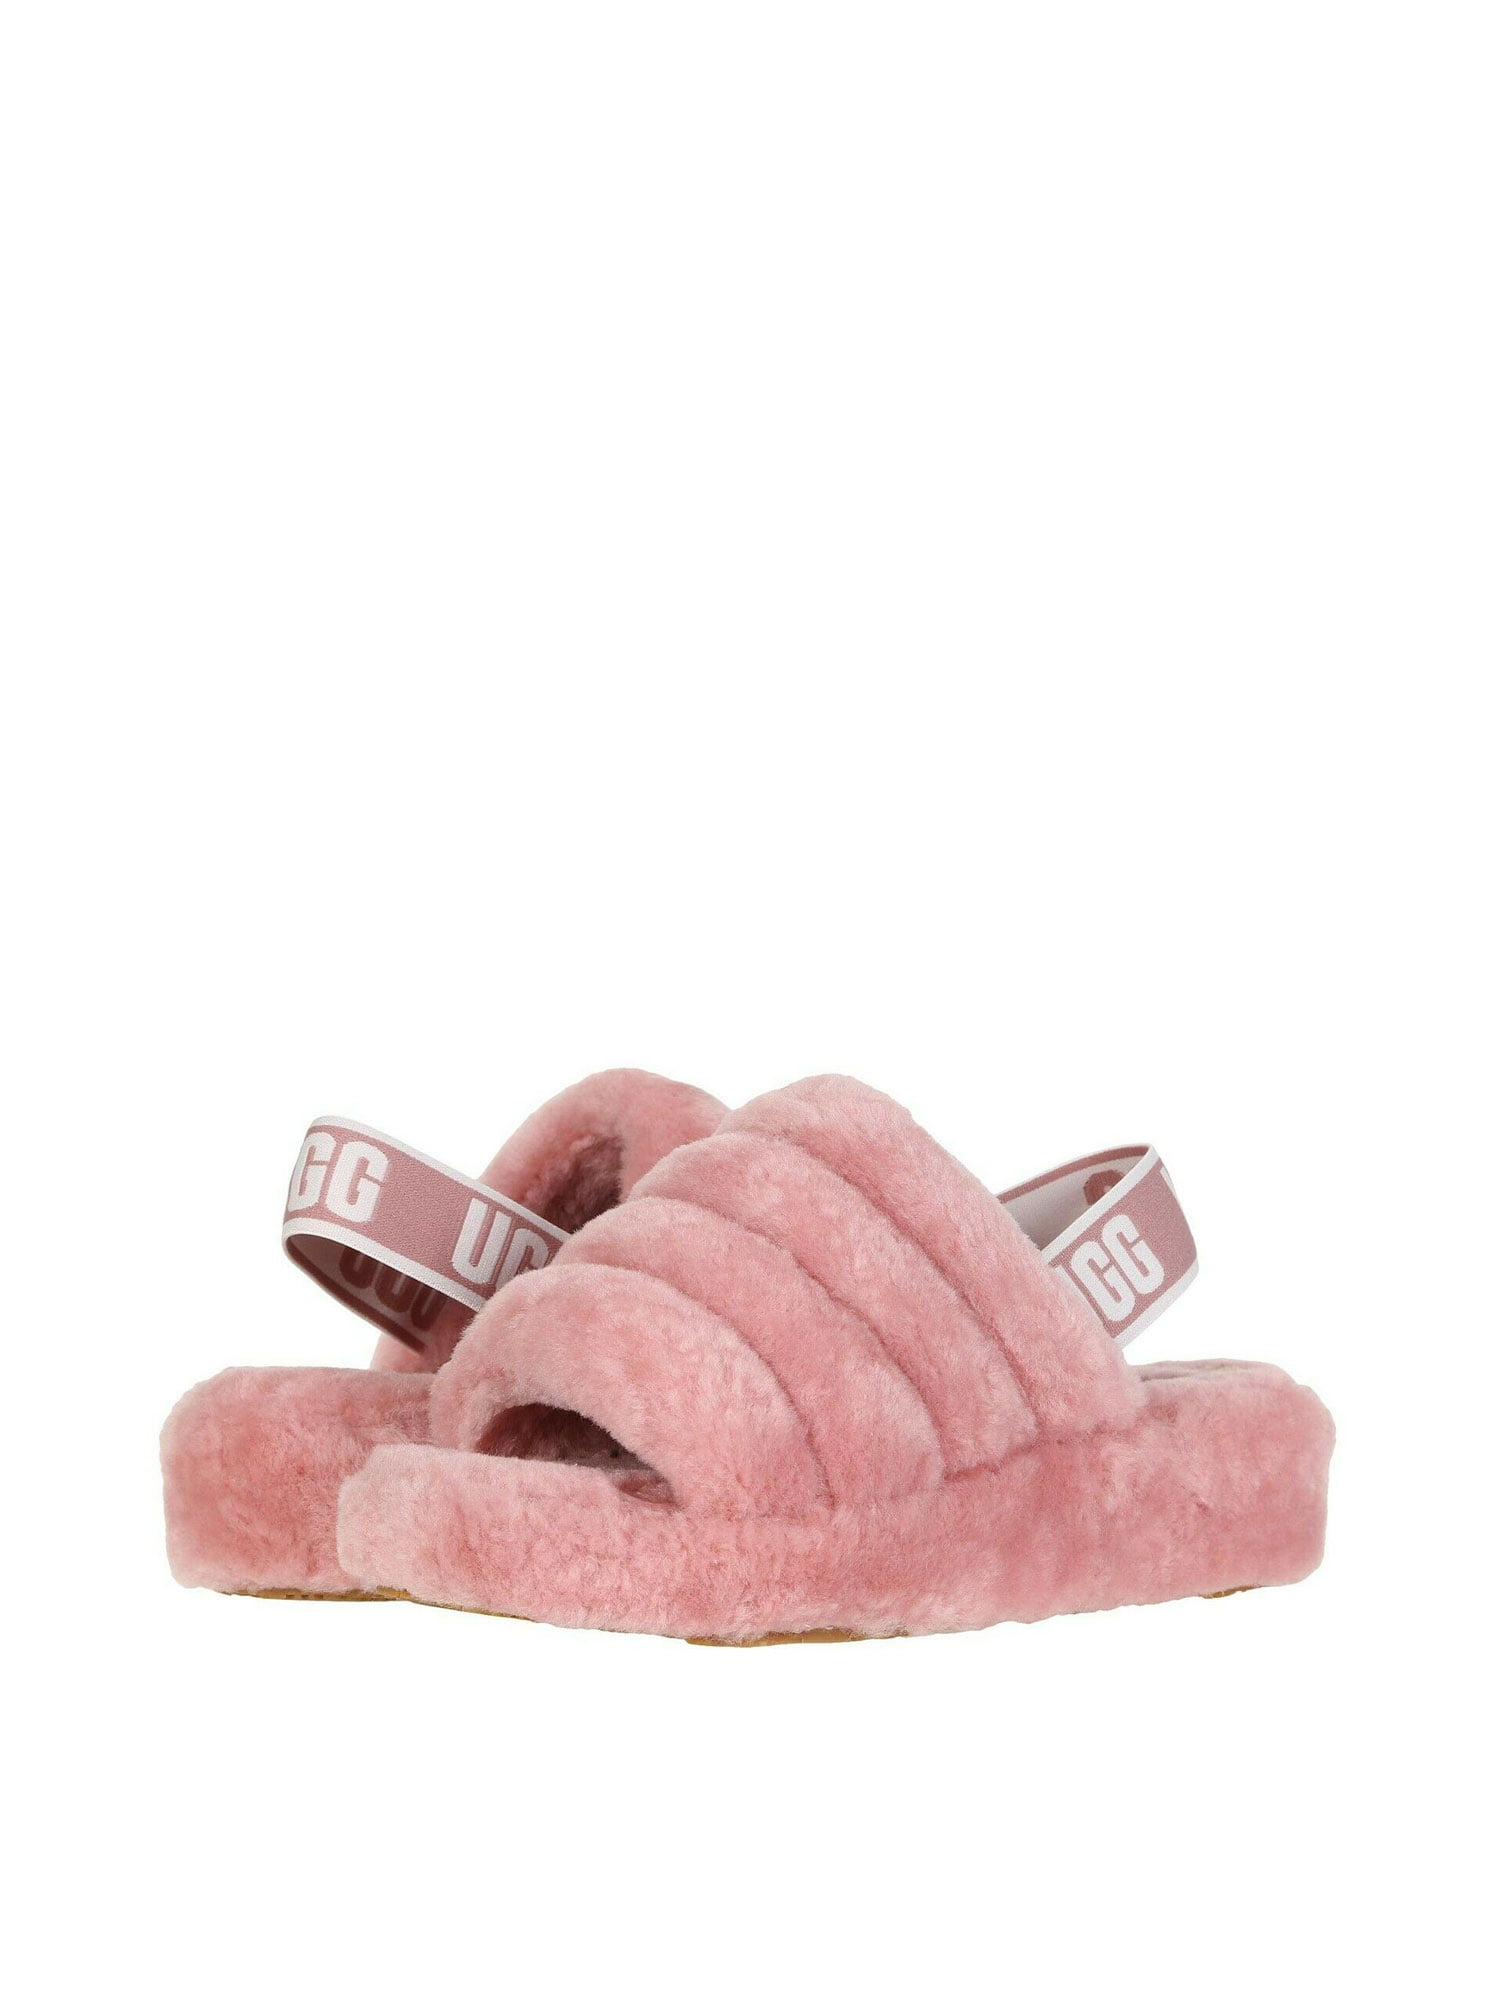 walmart ugg slippers